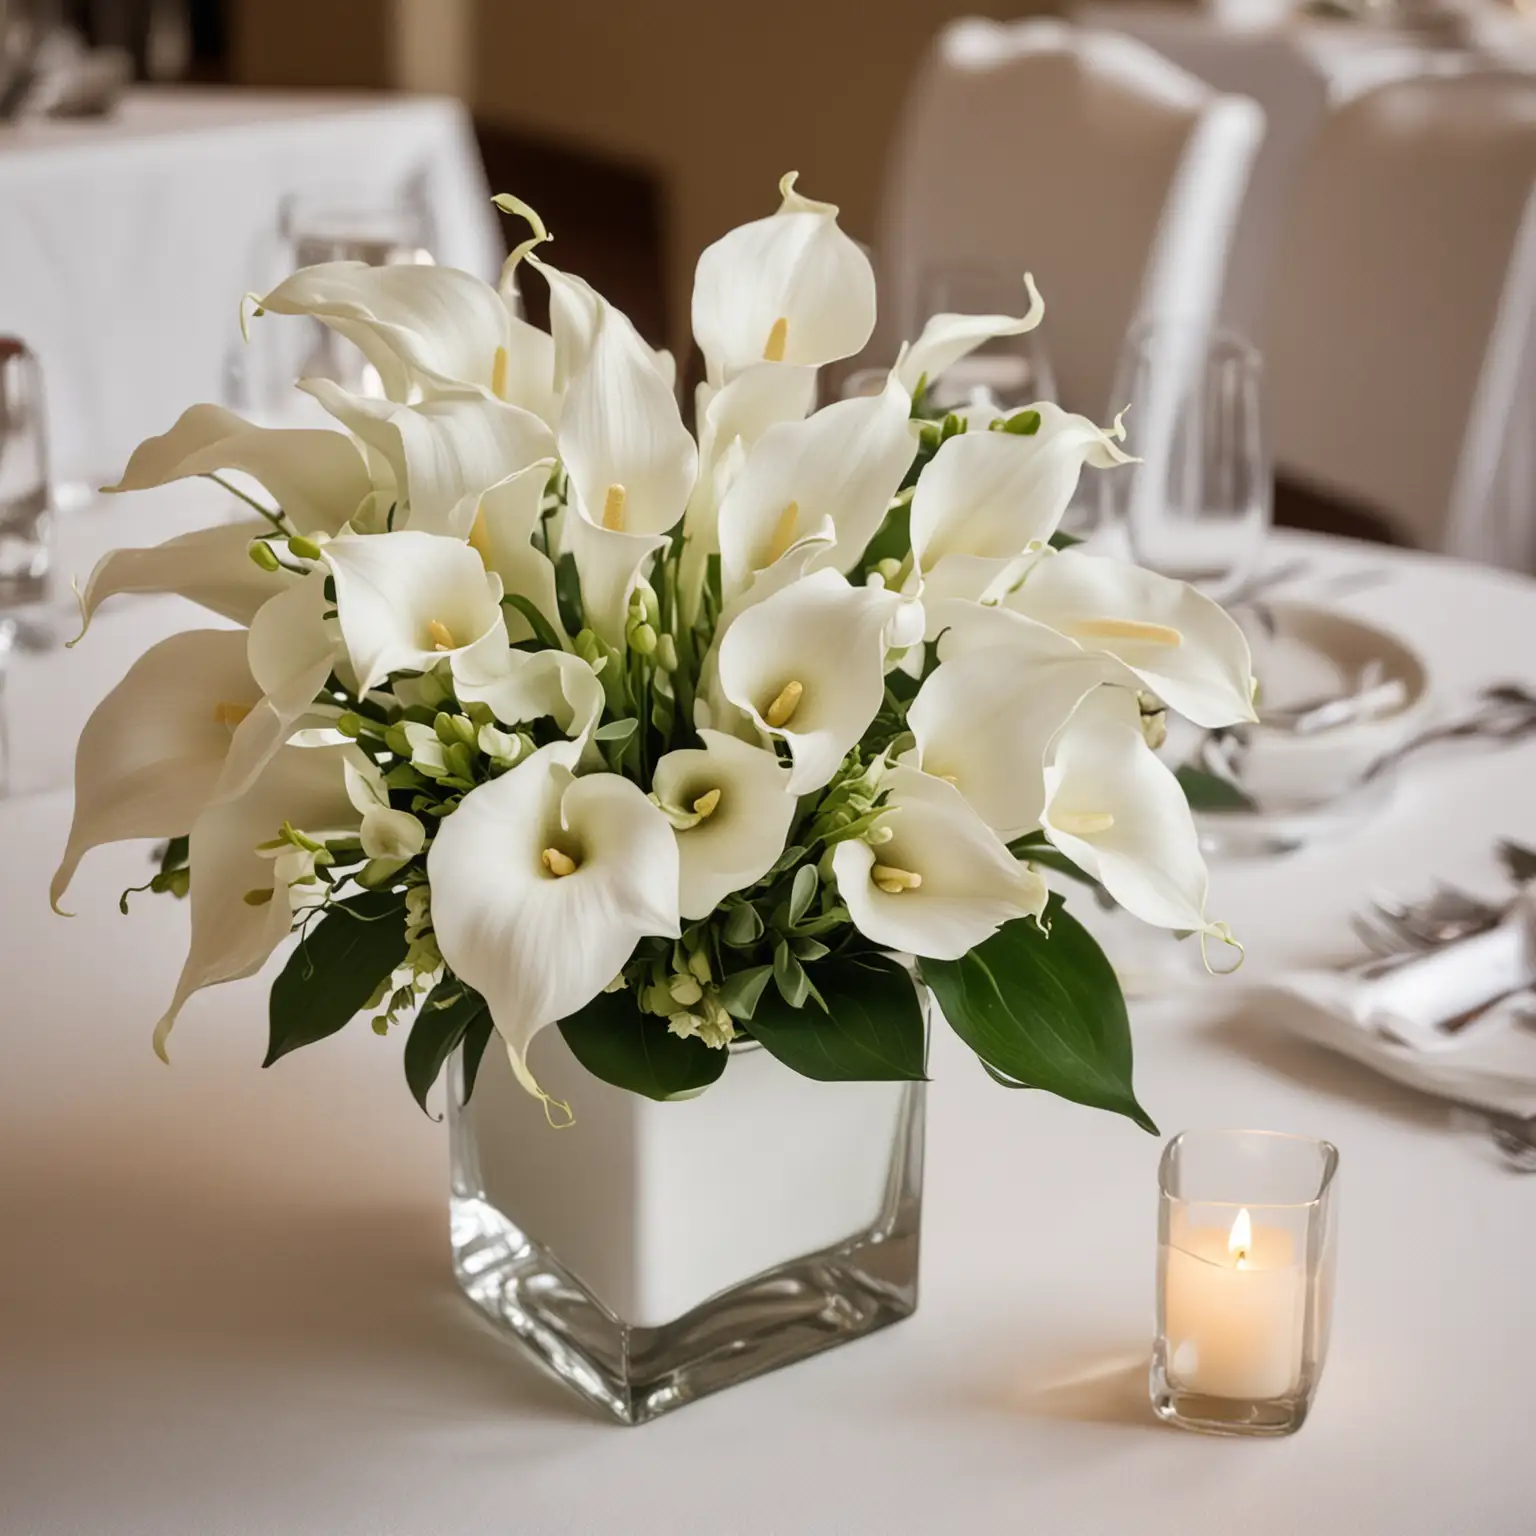 Elegant-White-Calla-Lily-Wedding-Centerpiece-in-Square-Ceramic-Vase